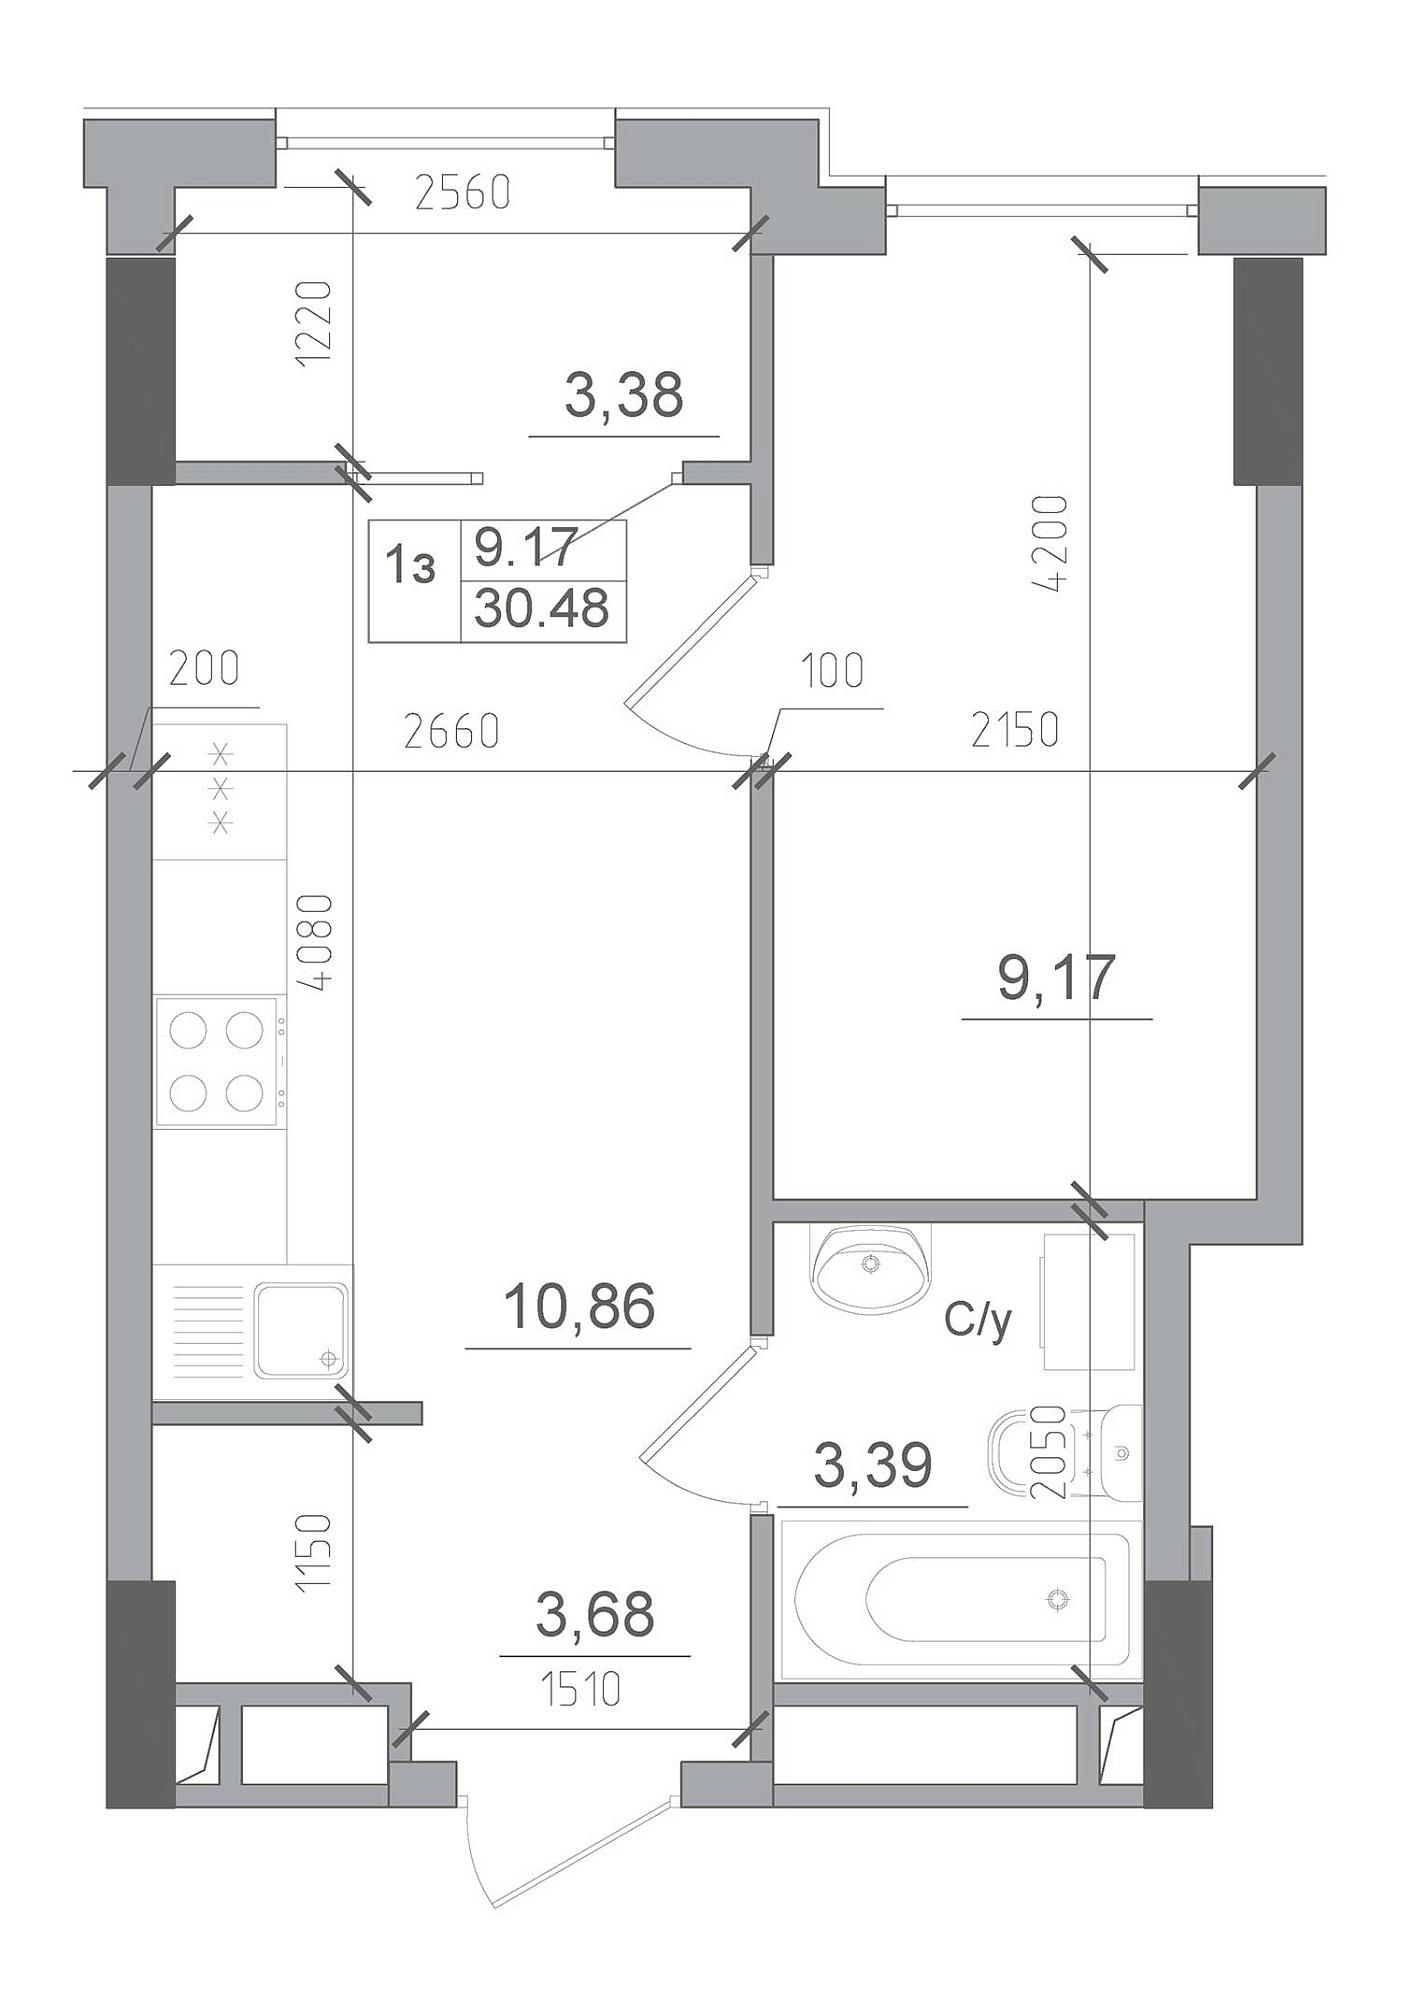 Планування 1-к квартира площею 30.48м2, AB-22-06/00013.